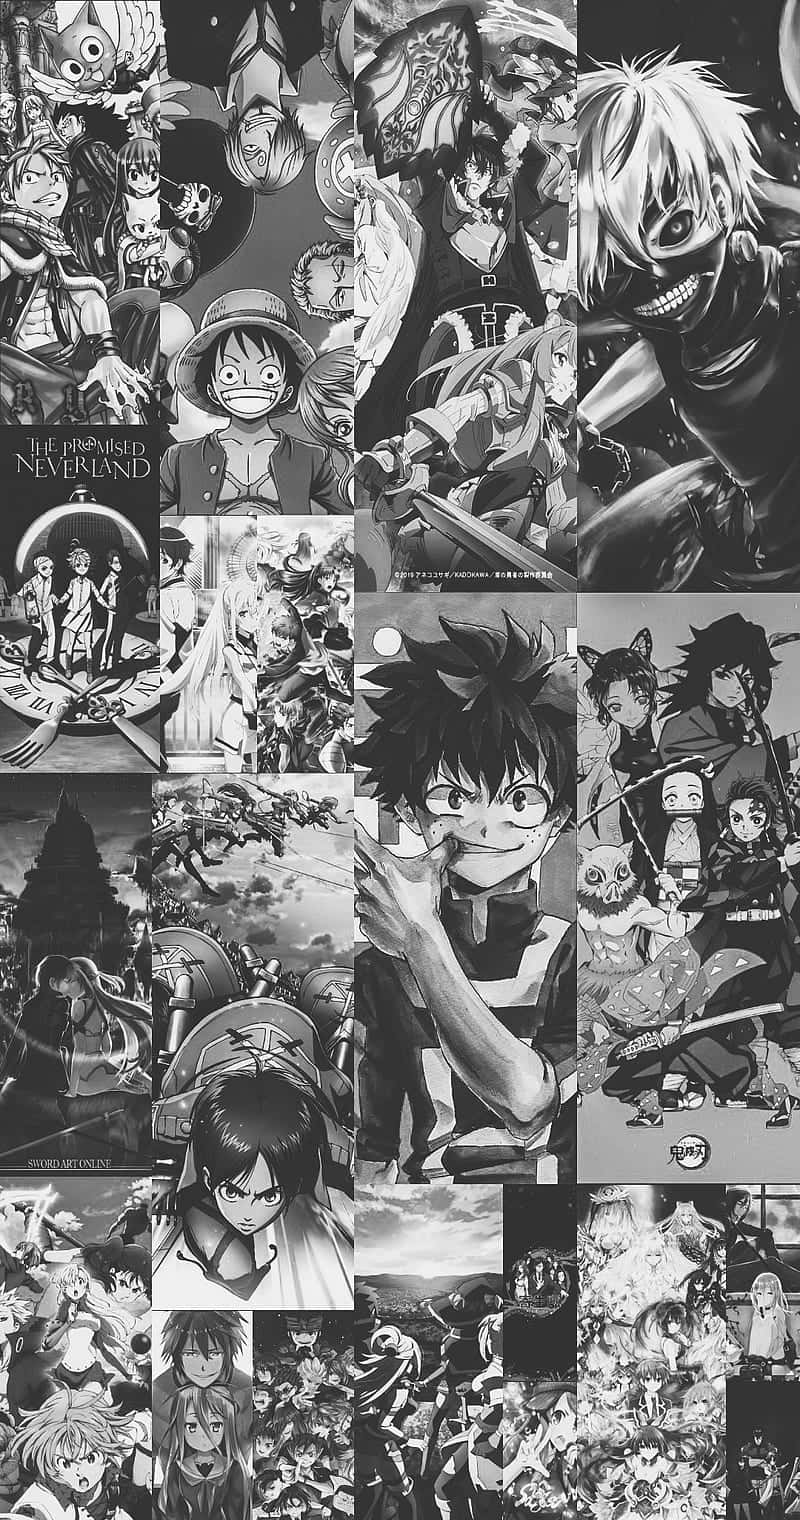 Einecollage Von Anime-charakteren In Schwarz Und Weiß Wallpaper